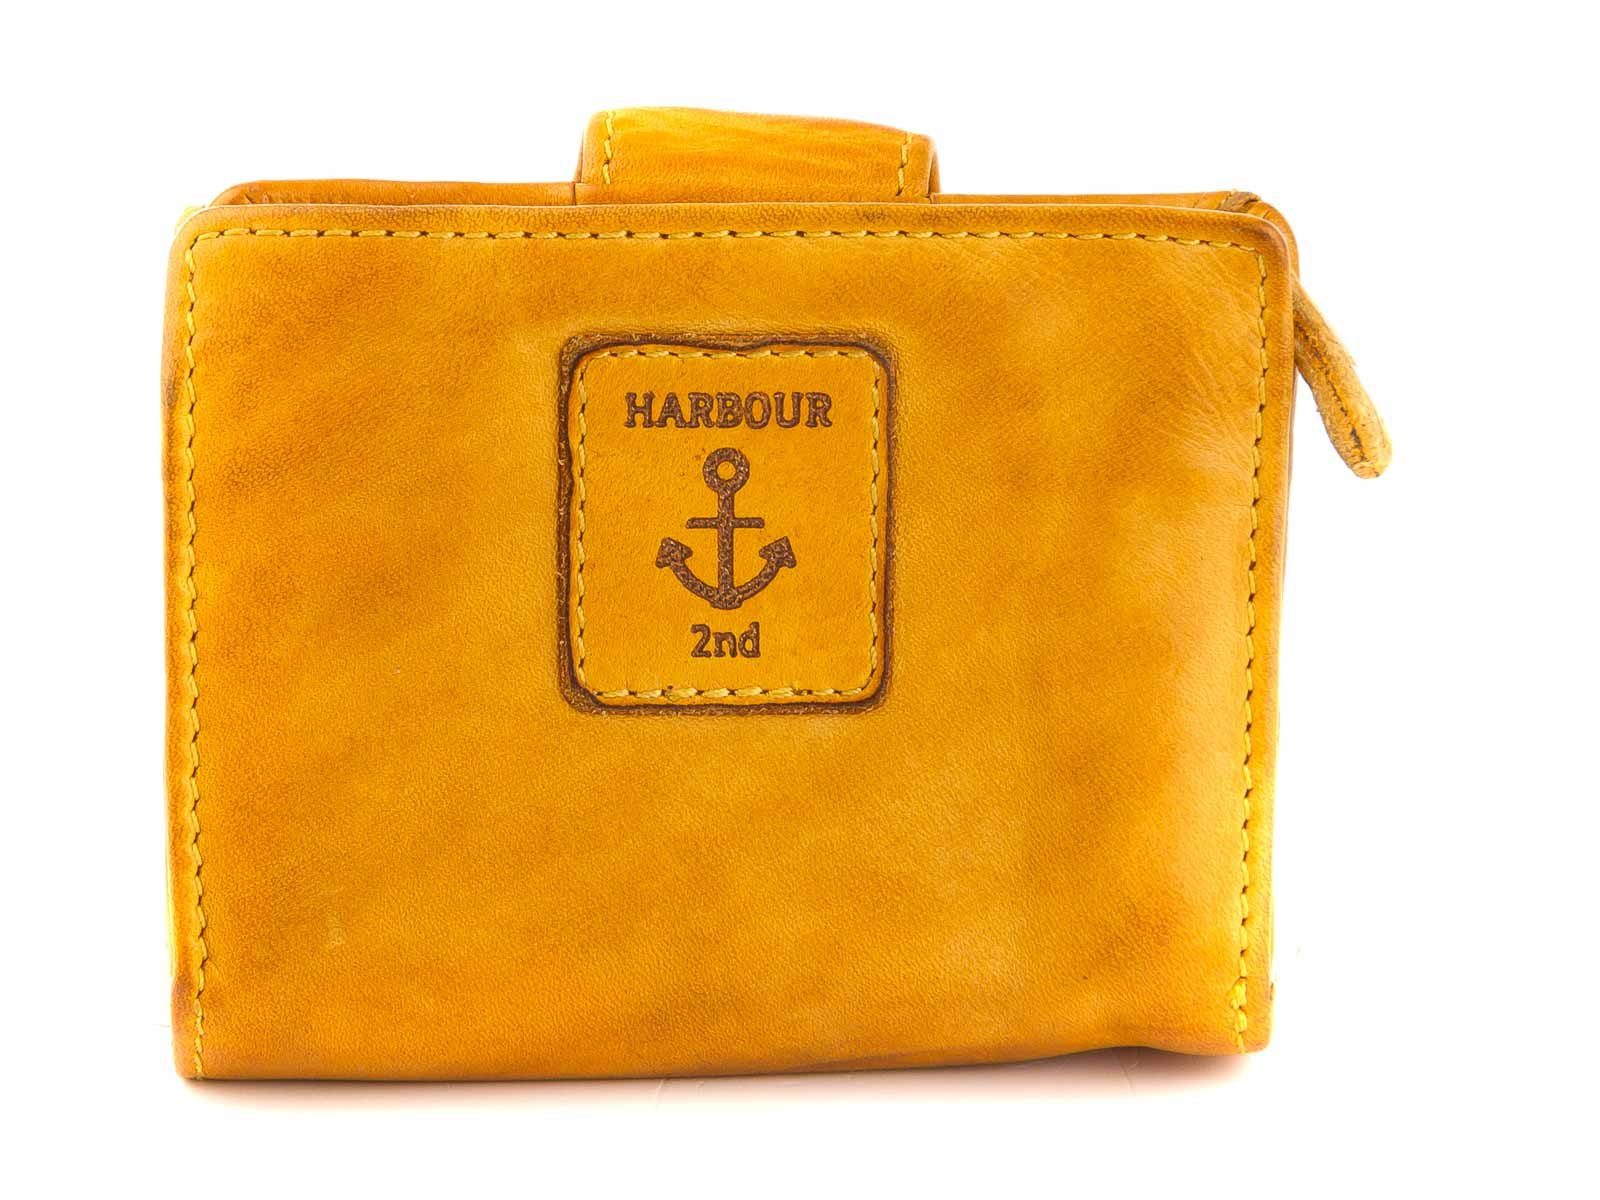 HARBOUR 2nd Geldbörse Geldbörse 2nd B3.1547 Übers, Harbour mustard mit Leder kl. Stella echt